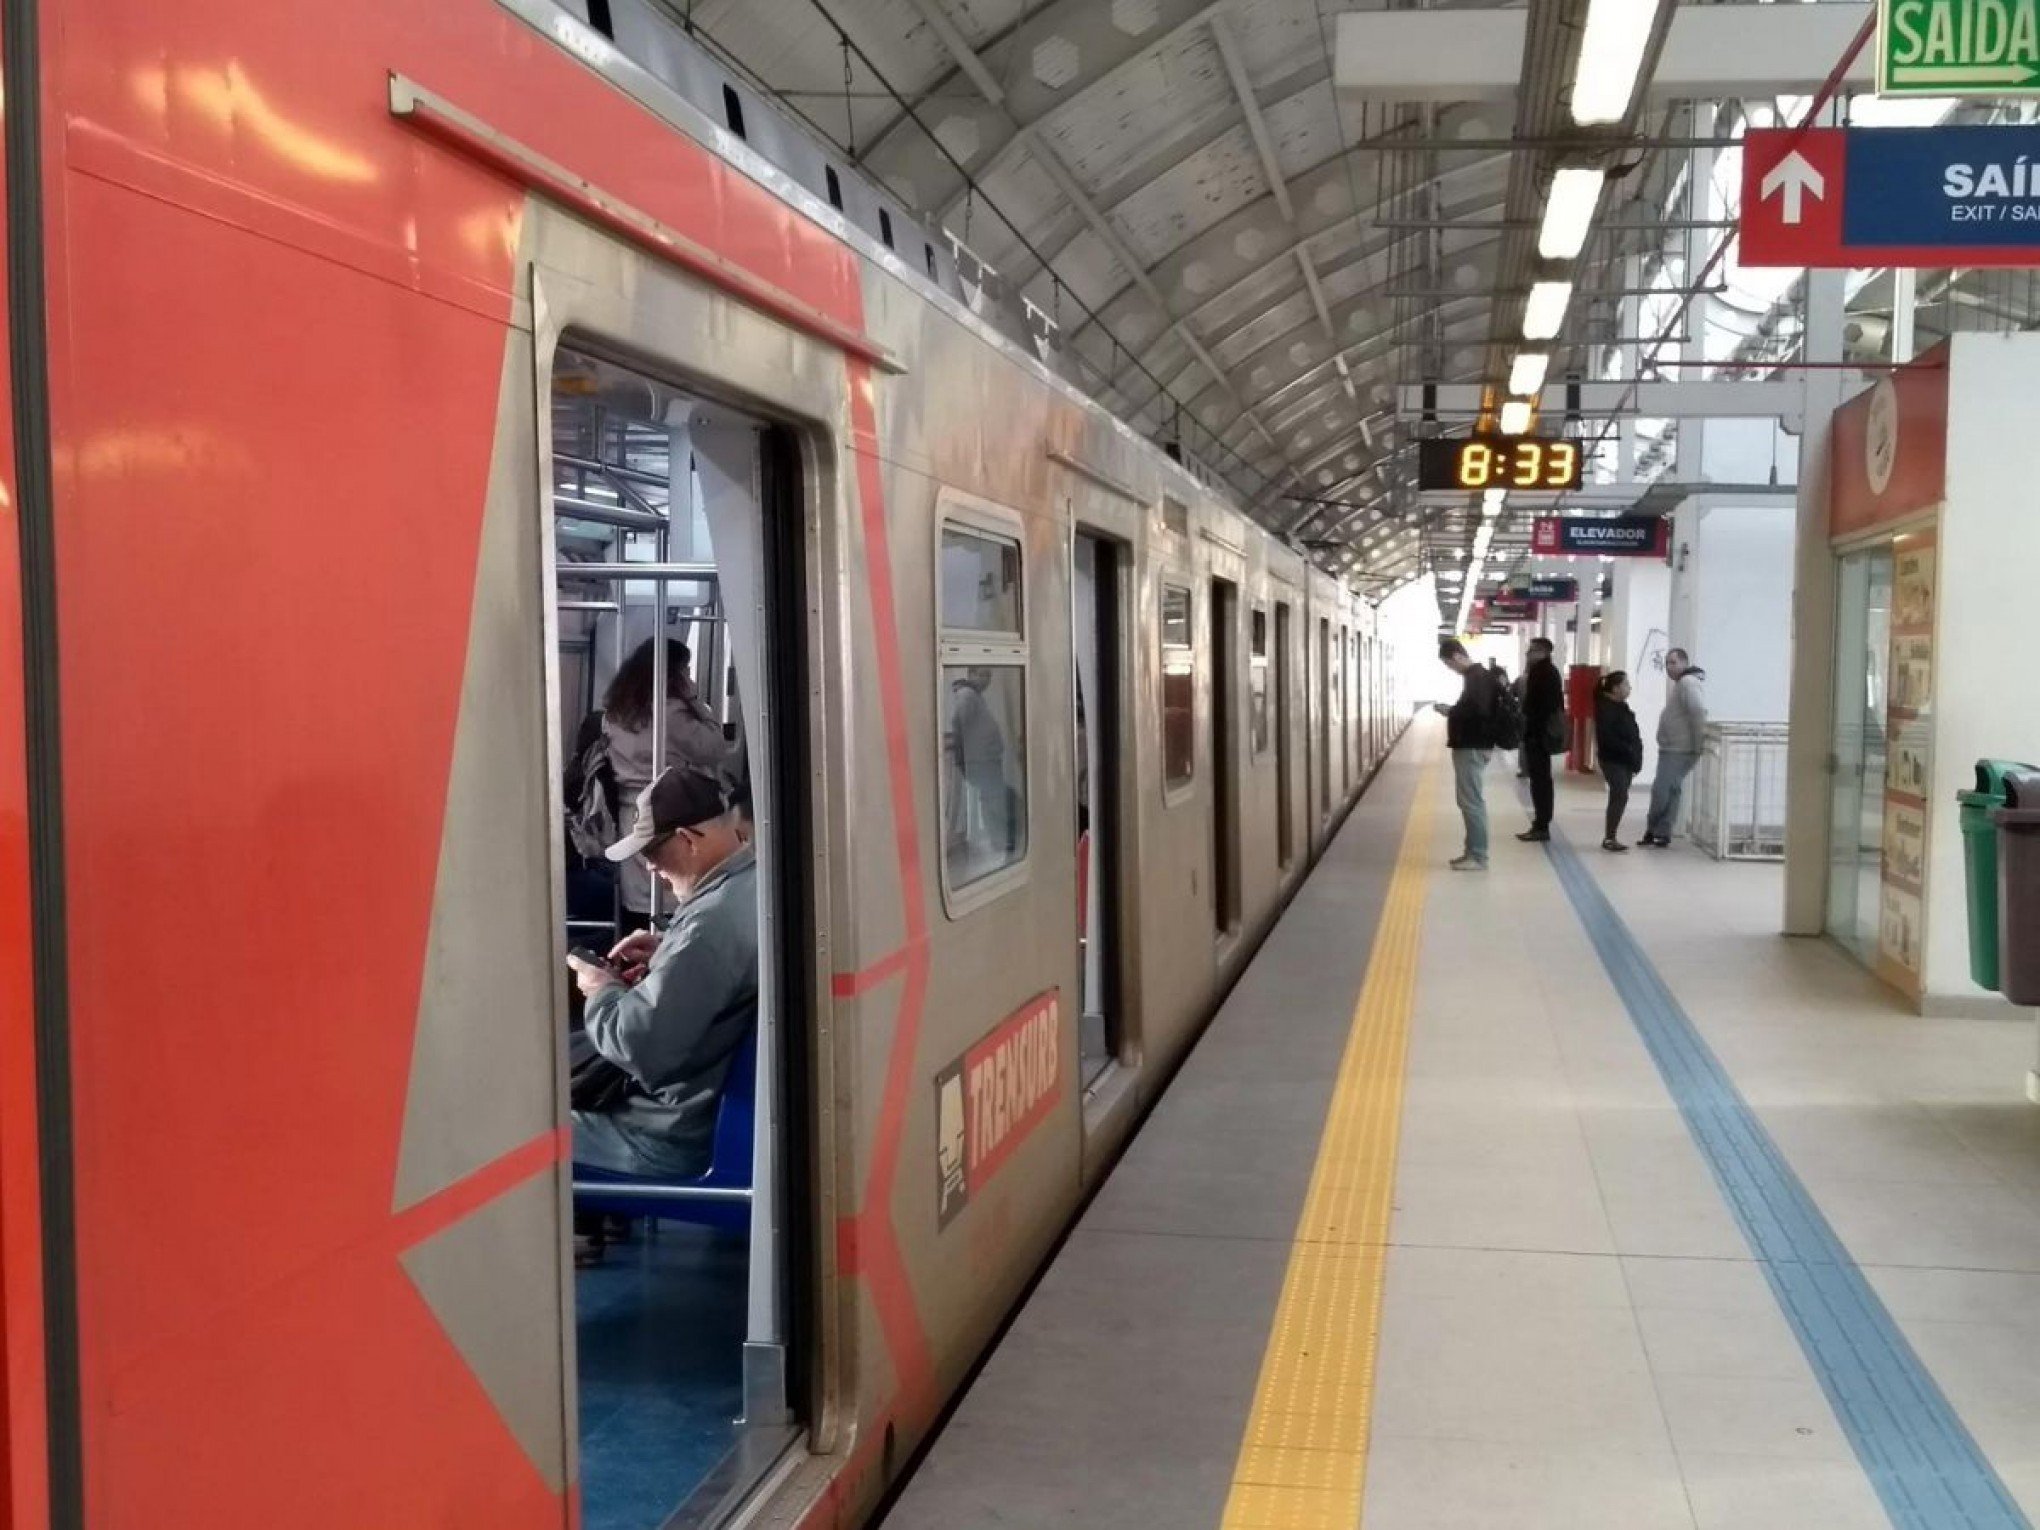 CAT脕STROFE NO RS: Trensurb atualiza sobre a opera莽茫o emergencial de retomada dos trens